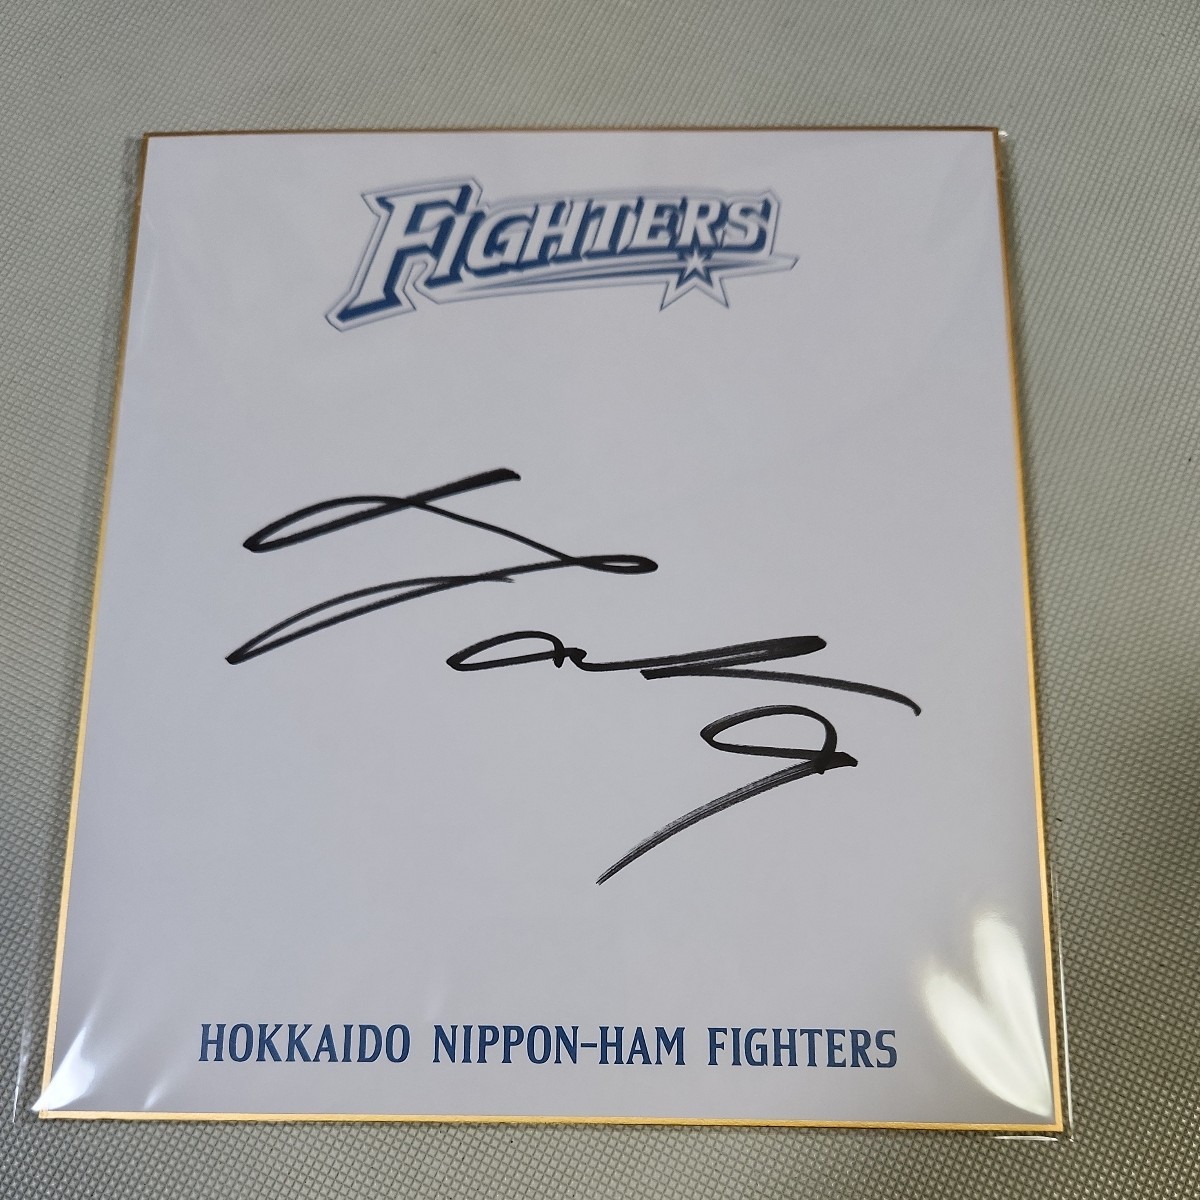 北海道日本火腿斗士队中岛卓也获得球队签名, 棒球, 纪念品, 相关商品, 符号